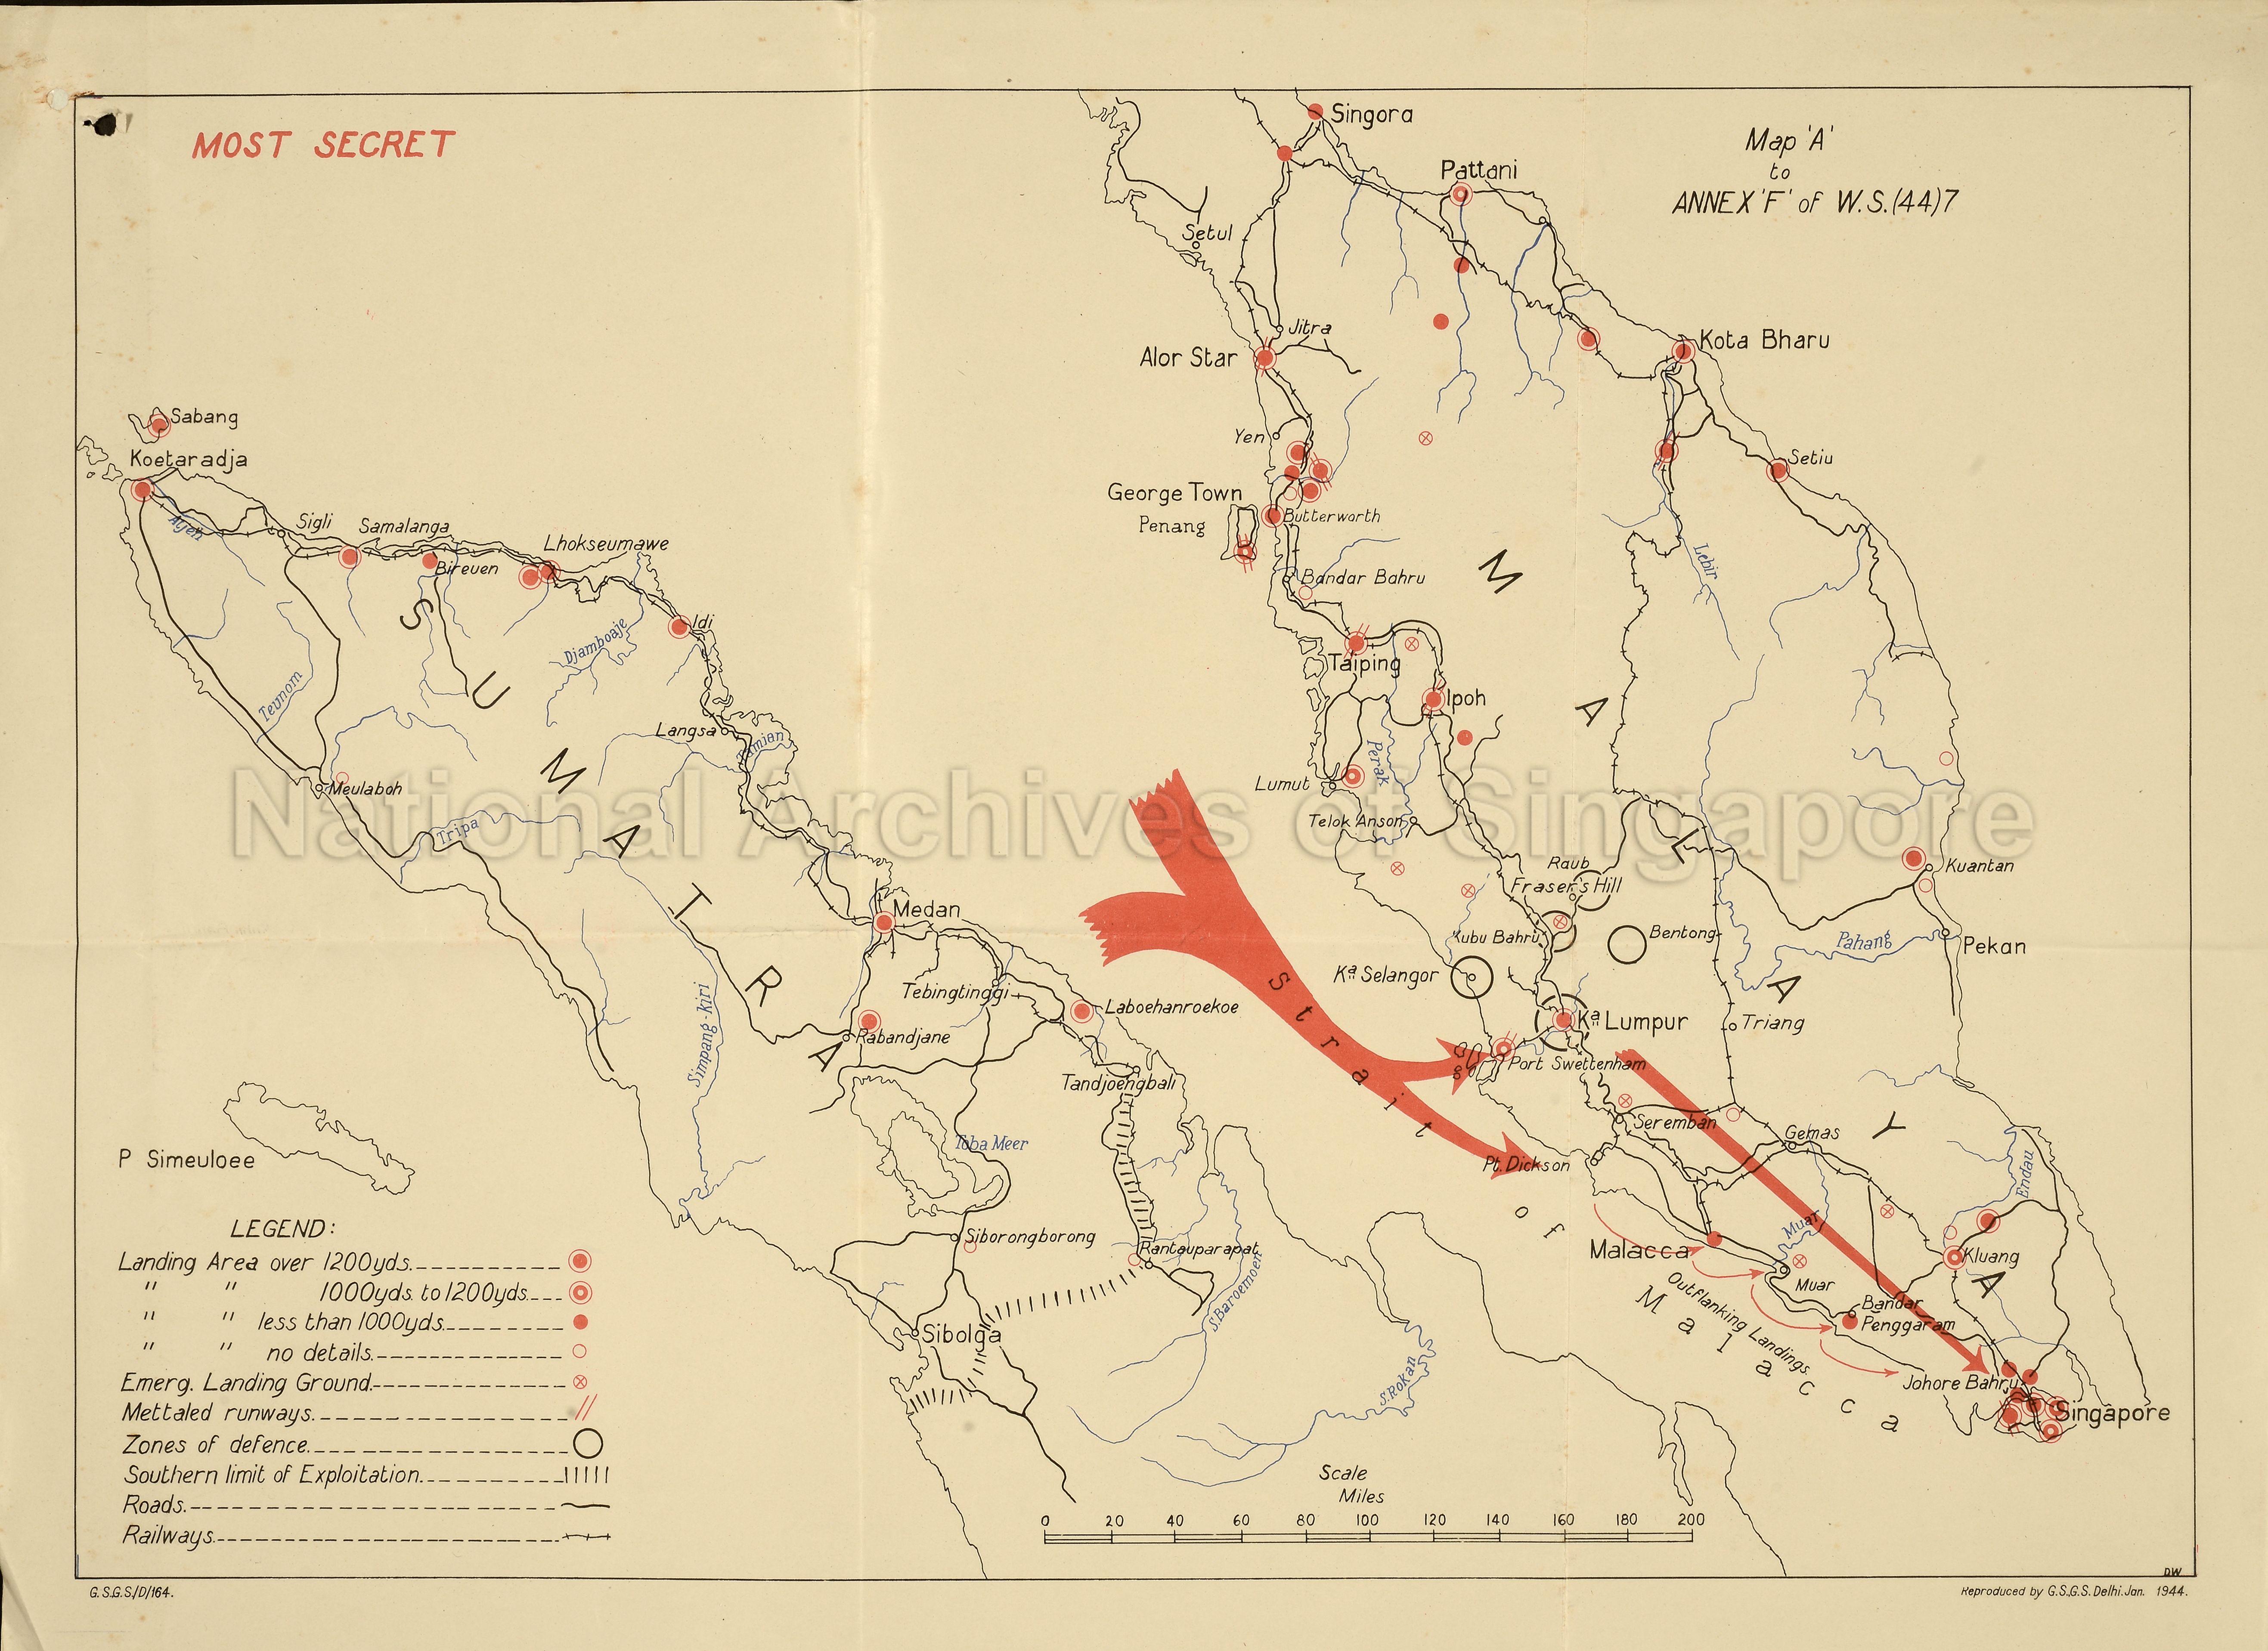 Sumatra, Malaya and Singapore: zones of defence